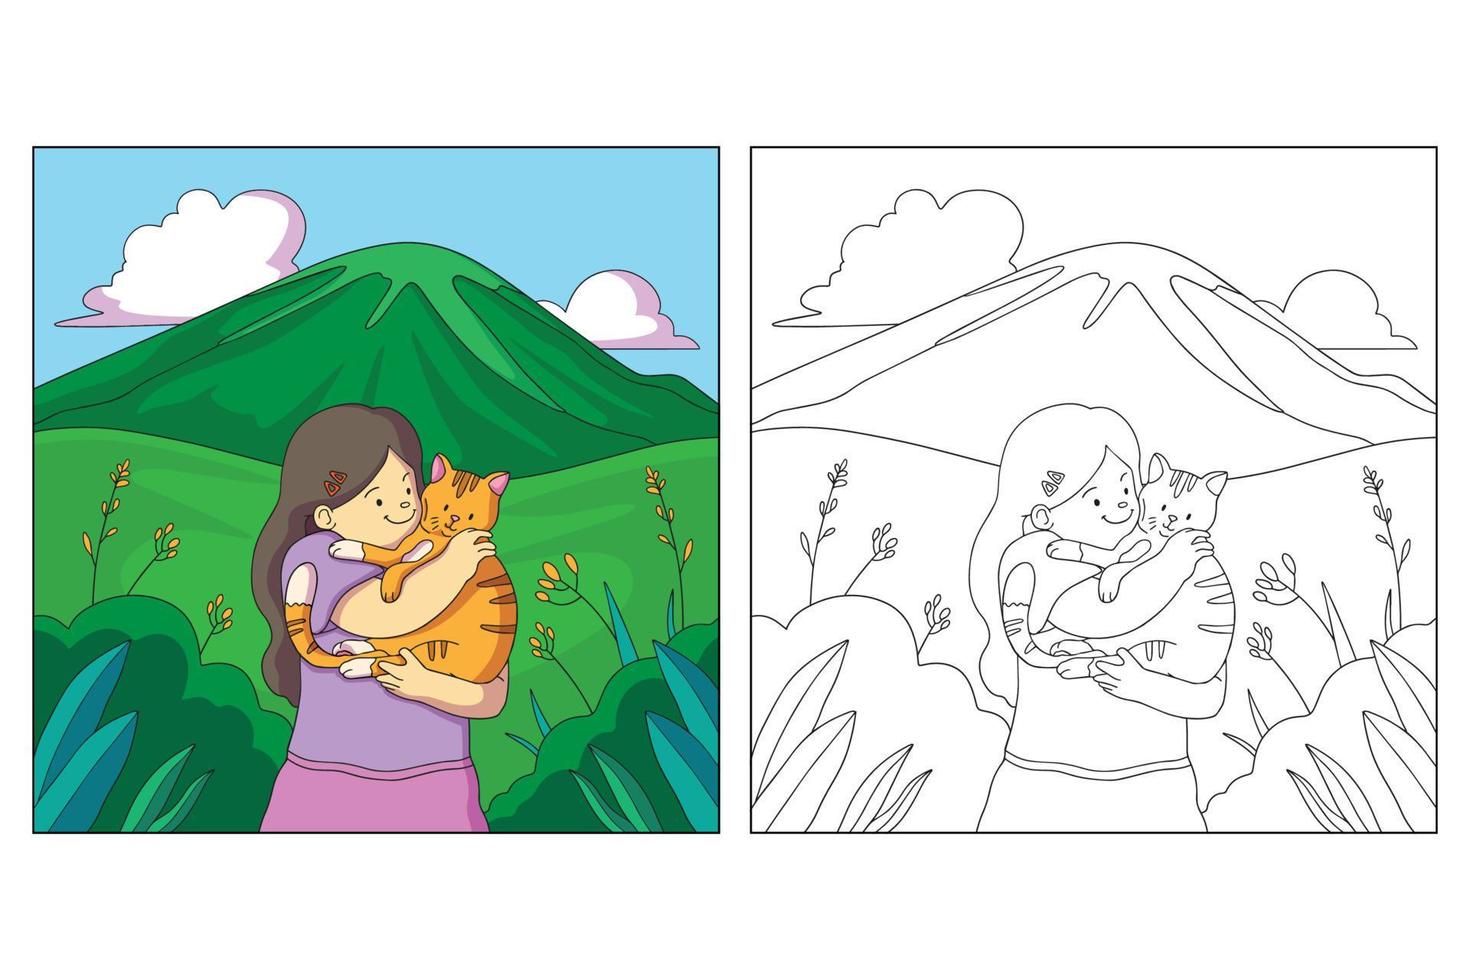 pagina da colorare per bambini e animali domestici disegnati a mano vettore